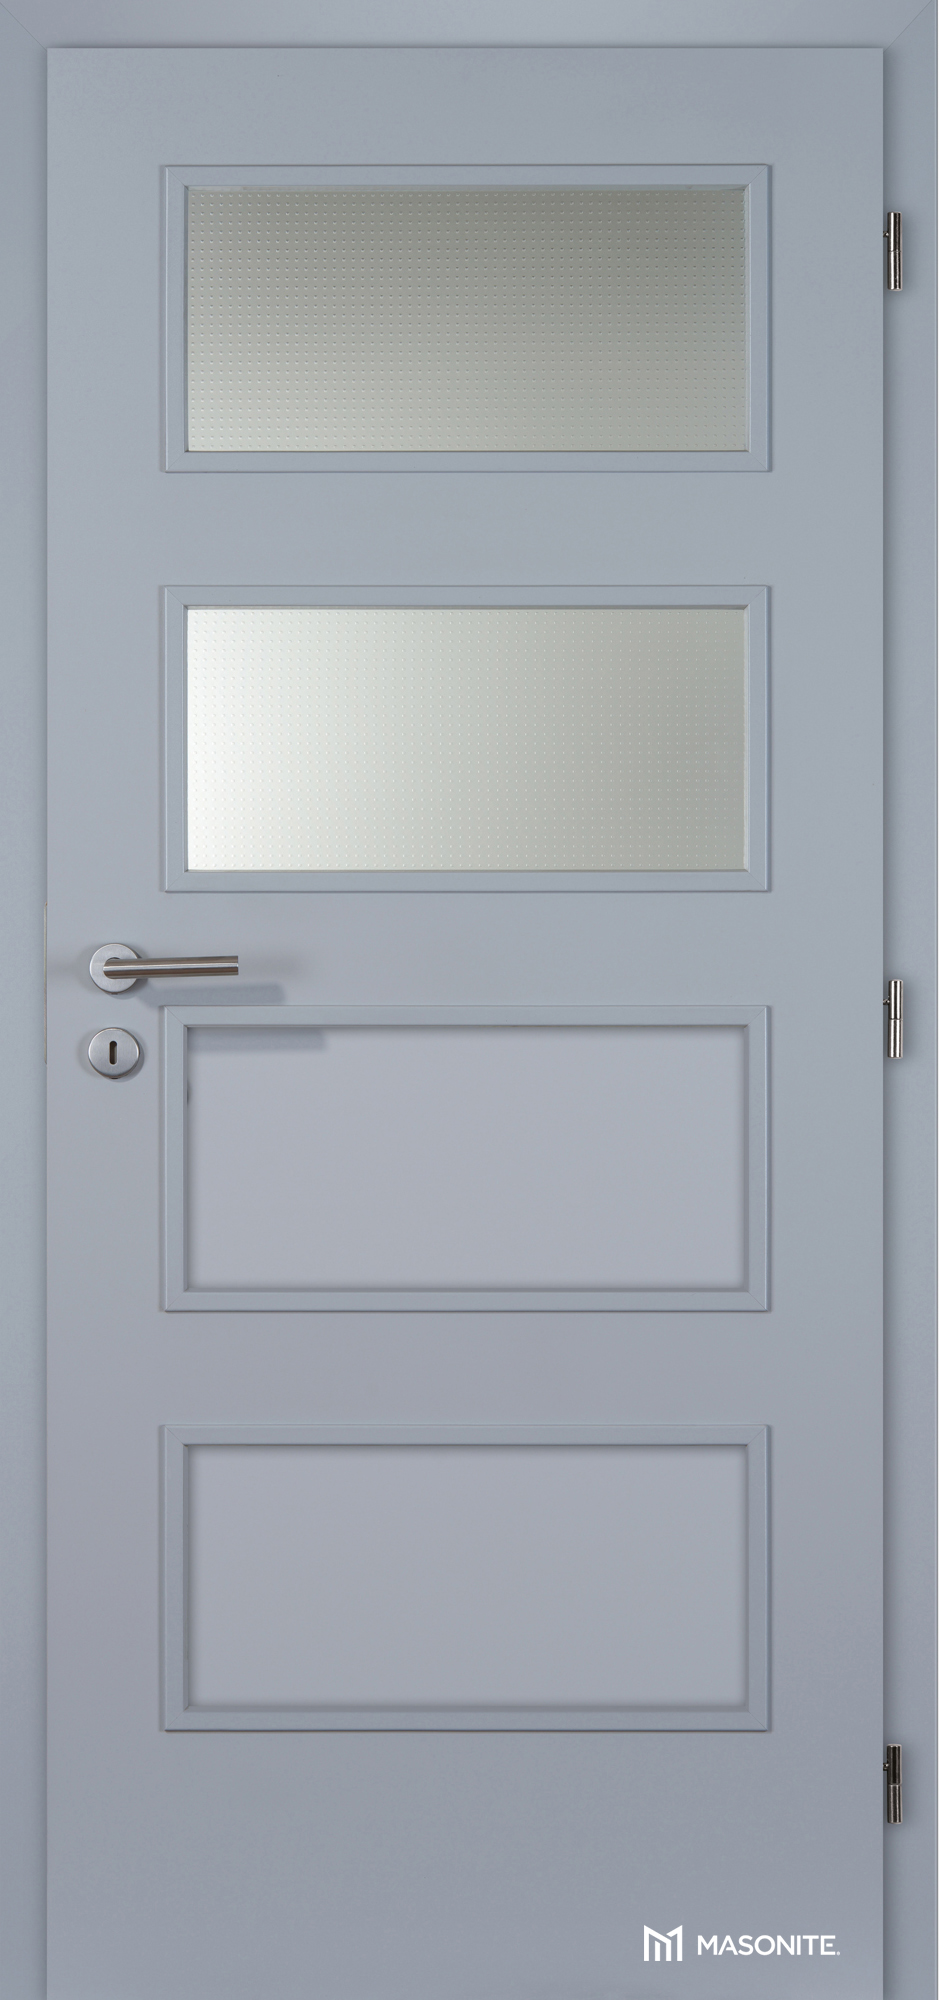 Dveře DTD DOMINANT 2x piskované sklo CPL šedá